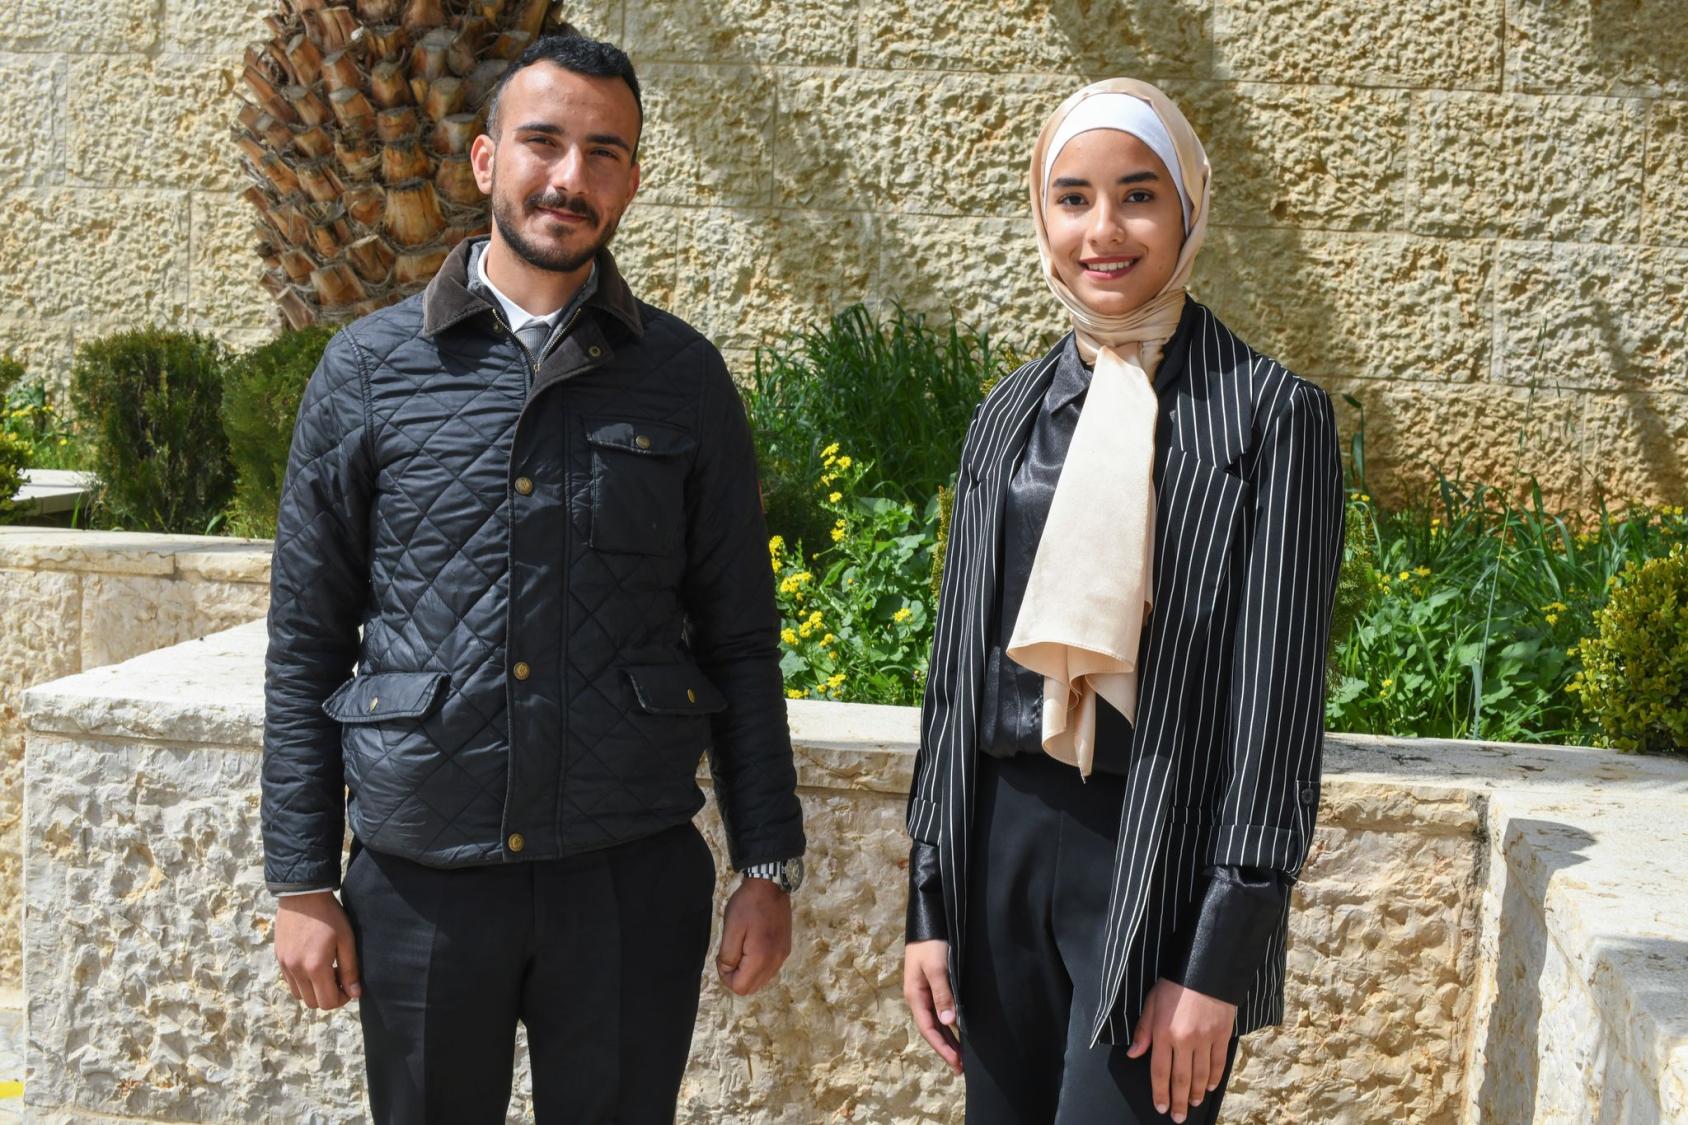 علاء الحجازين ونورهان الغربلي المشاركان في حدث ابتكار الشباب في مجال الأمن الغذائي الذي نظم من قبل اليونيسف وبرنامج الأغذية العالمي في الأردن.